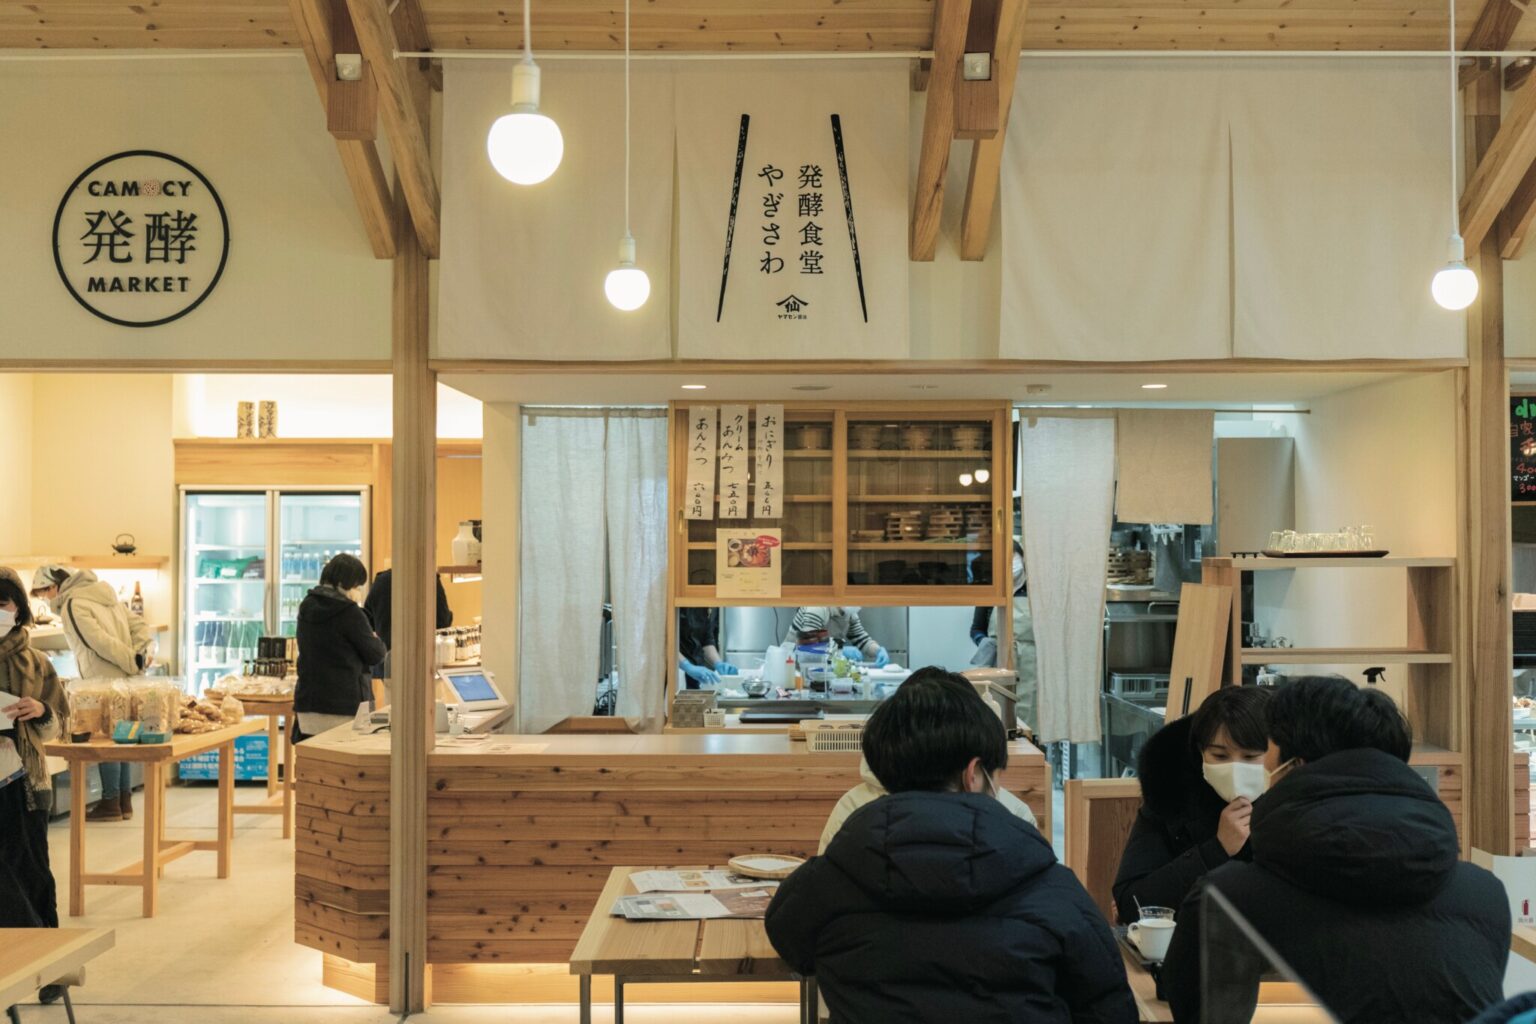 岩手県陸前高田市にある発酵テーマパーク〈CAMOCY〉。中央のフードホールを、7つの店舗がぐるりと囲む。みんなで集う人、ひとりでくつろぐ人、思い思いの楽しみ方で過ごす憩いの場。